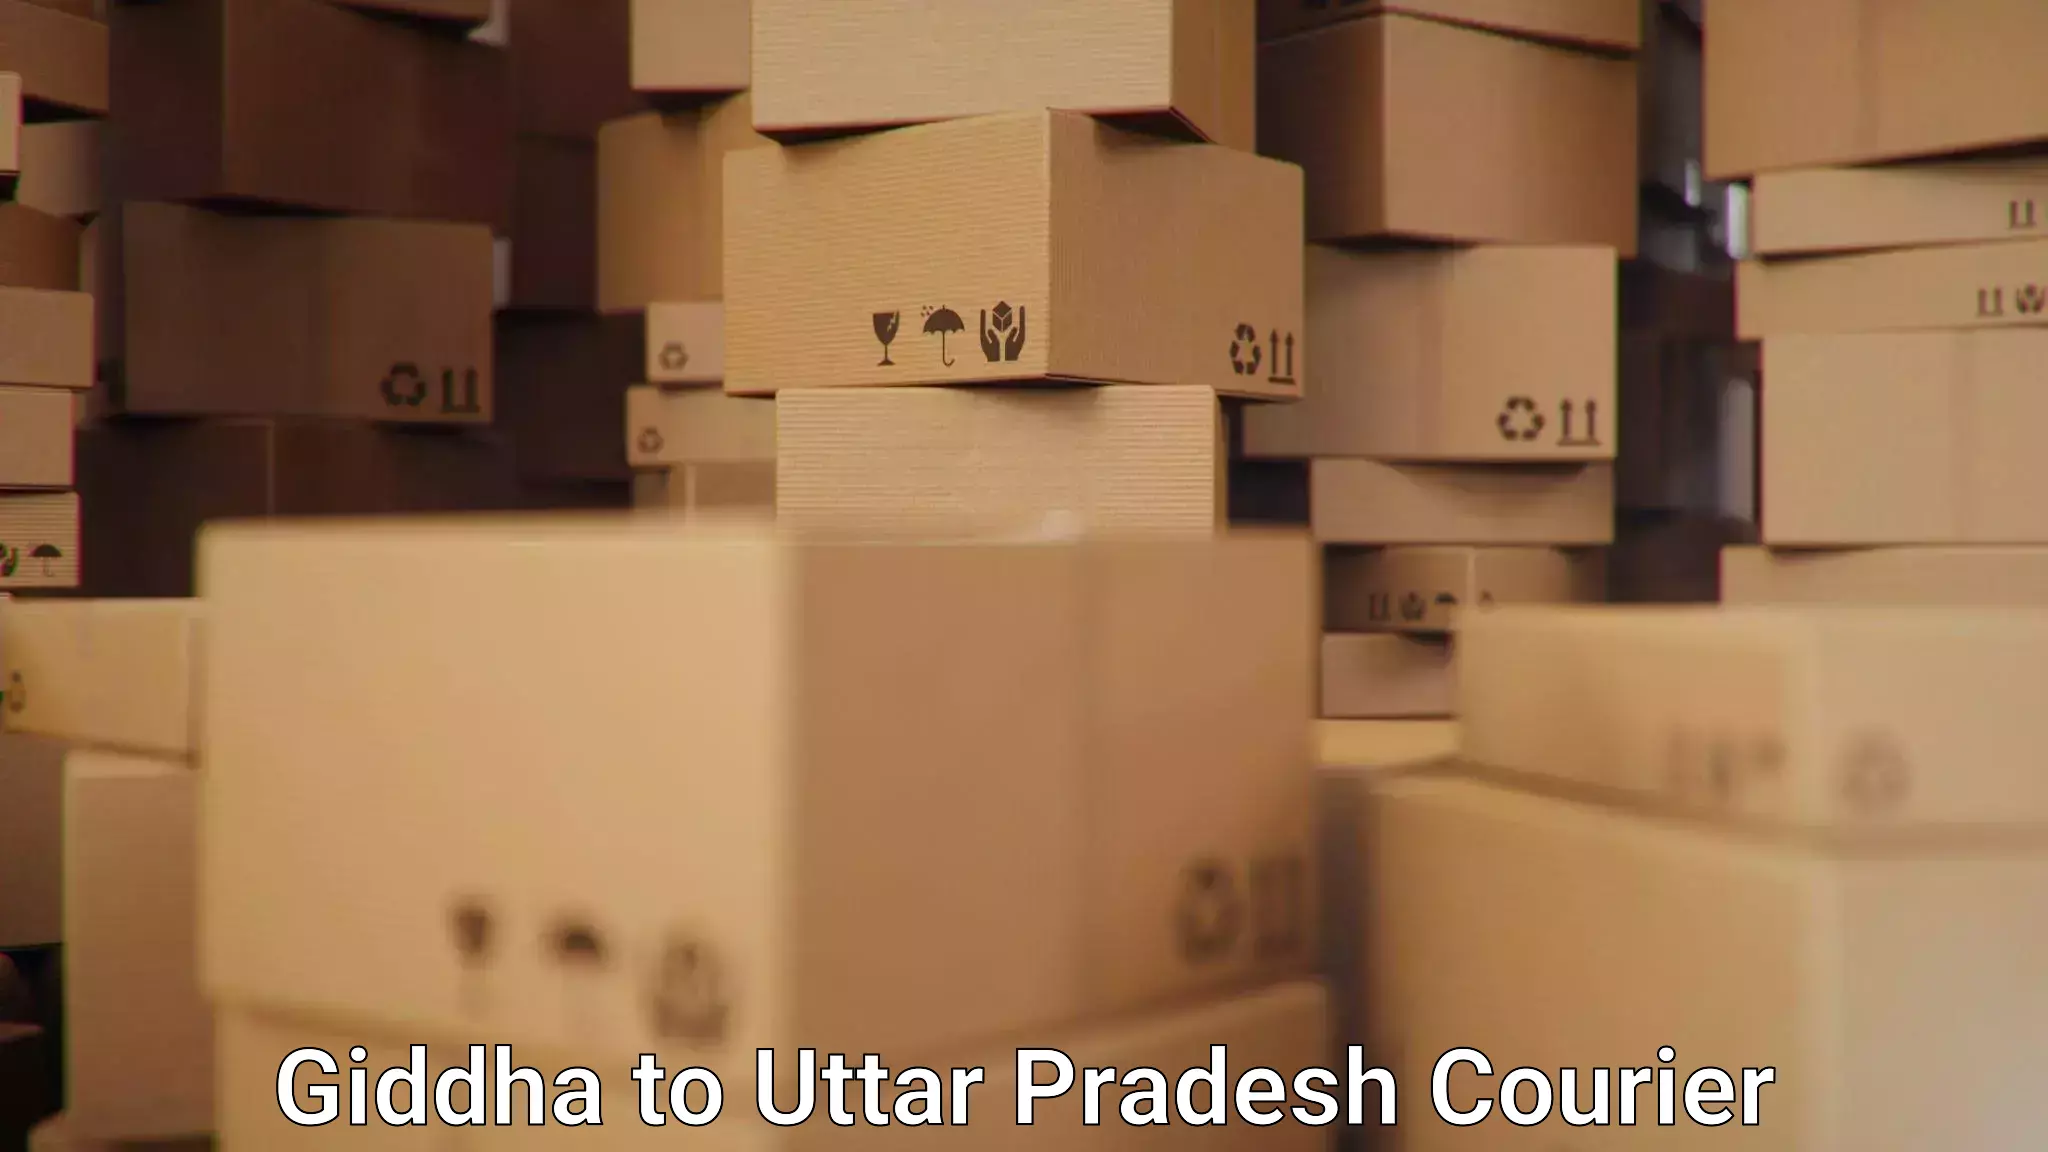 E-commerce fulfillment Giddha to Uttar Pradesh